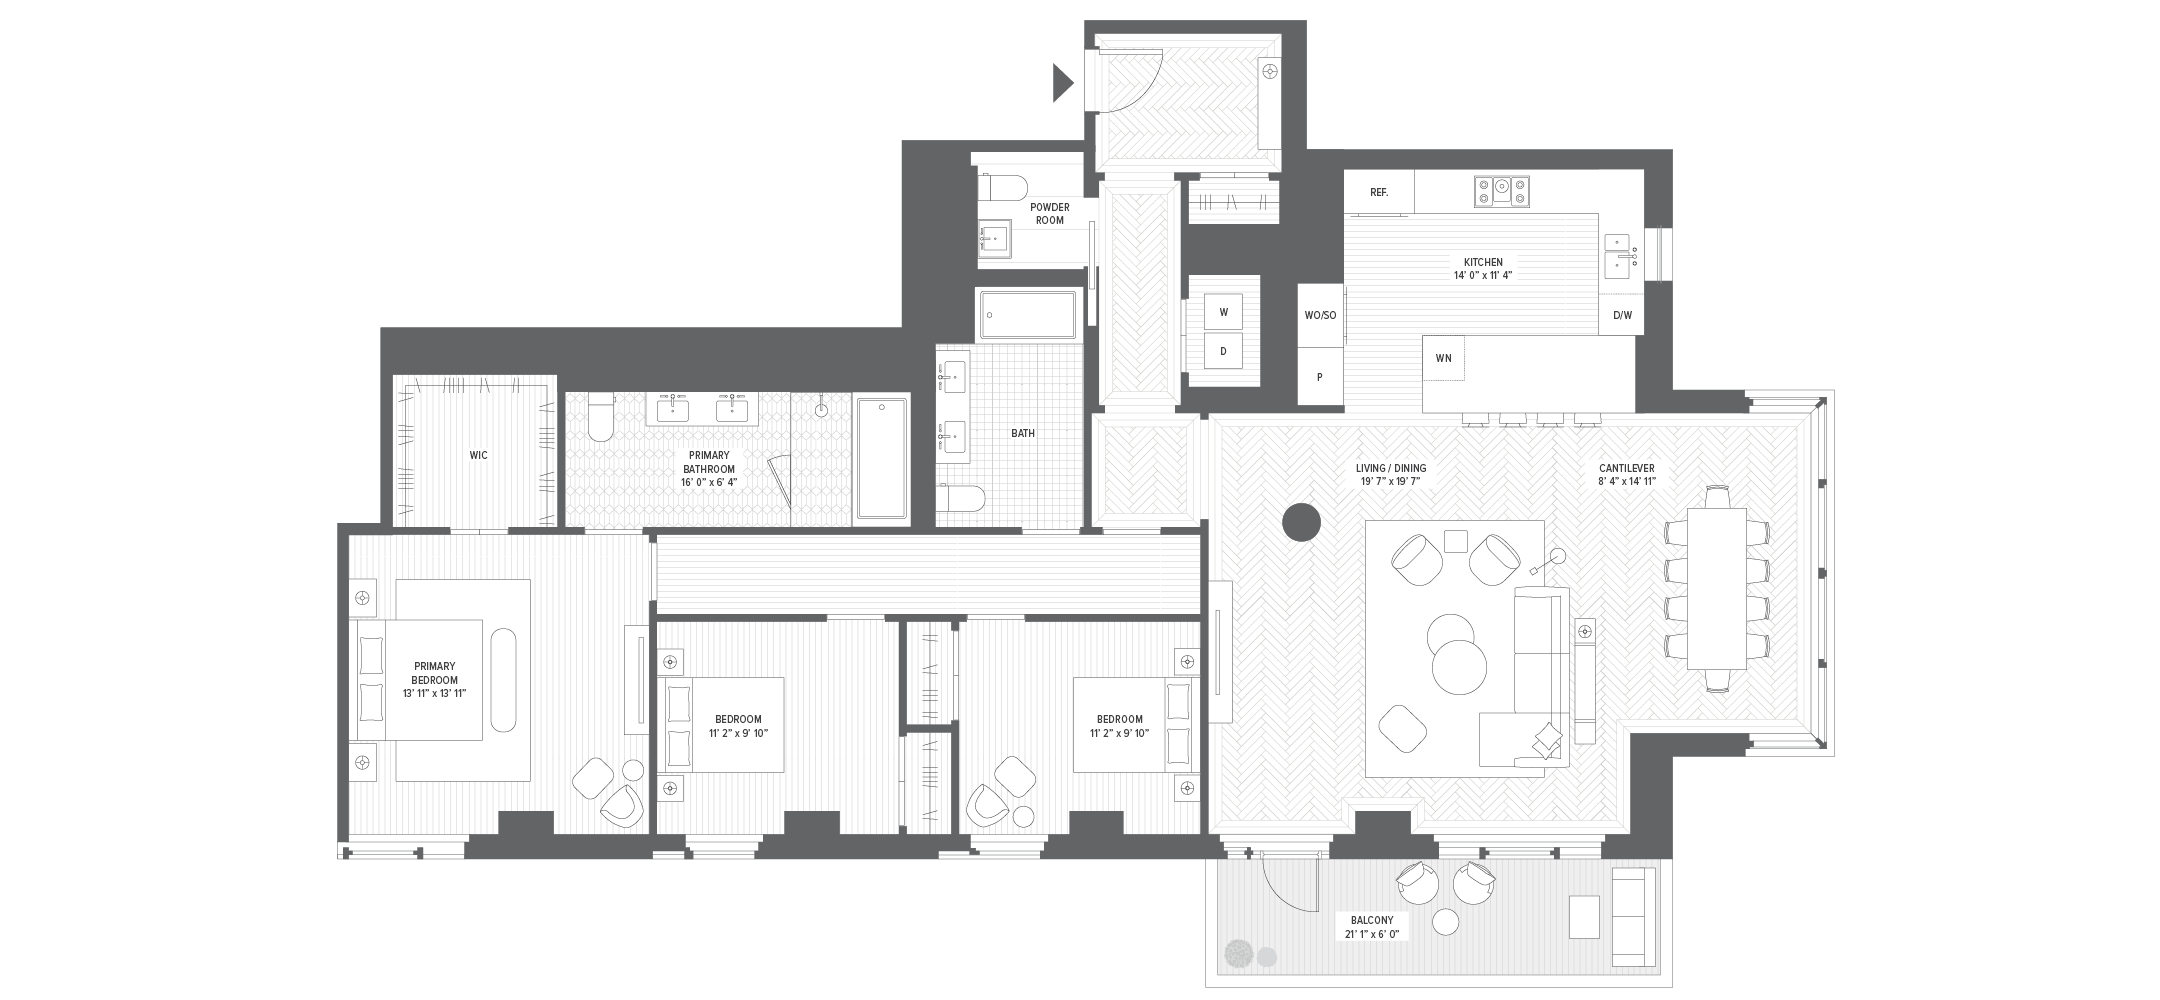 Unit 17B floorplan